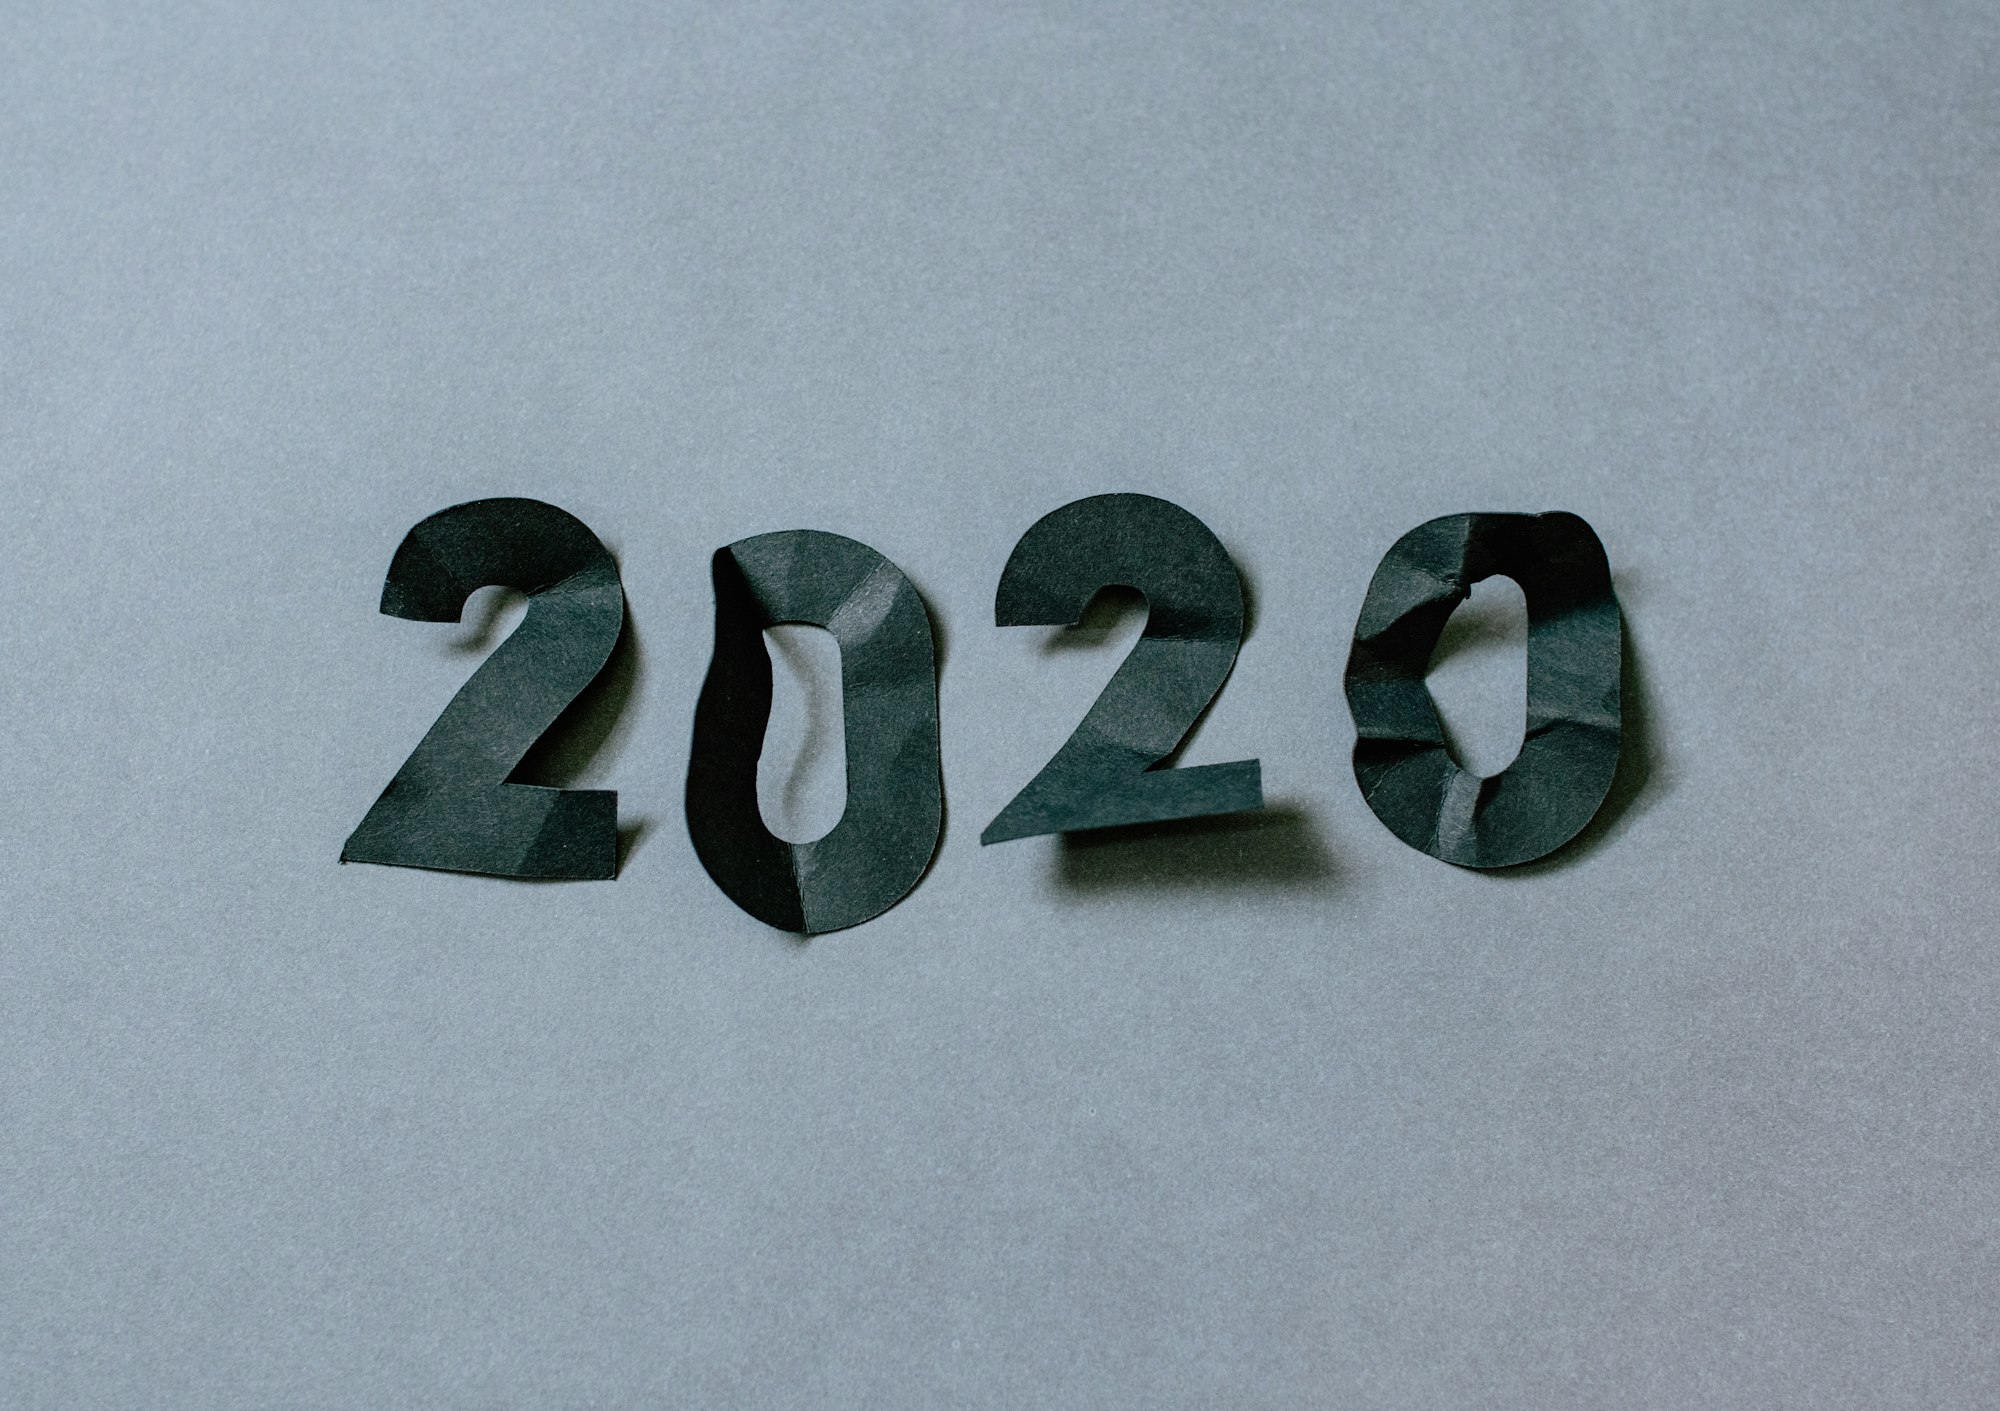 [更新] 2020年最后一次更新